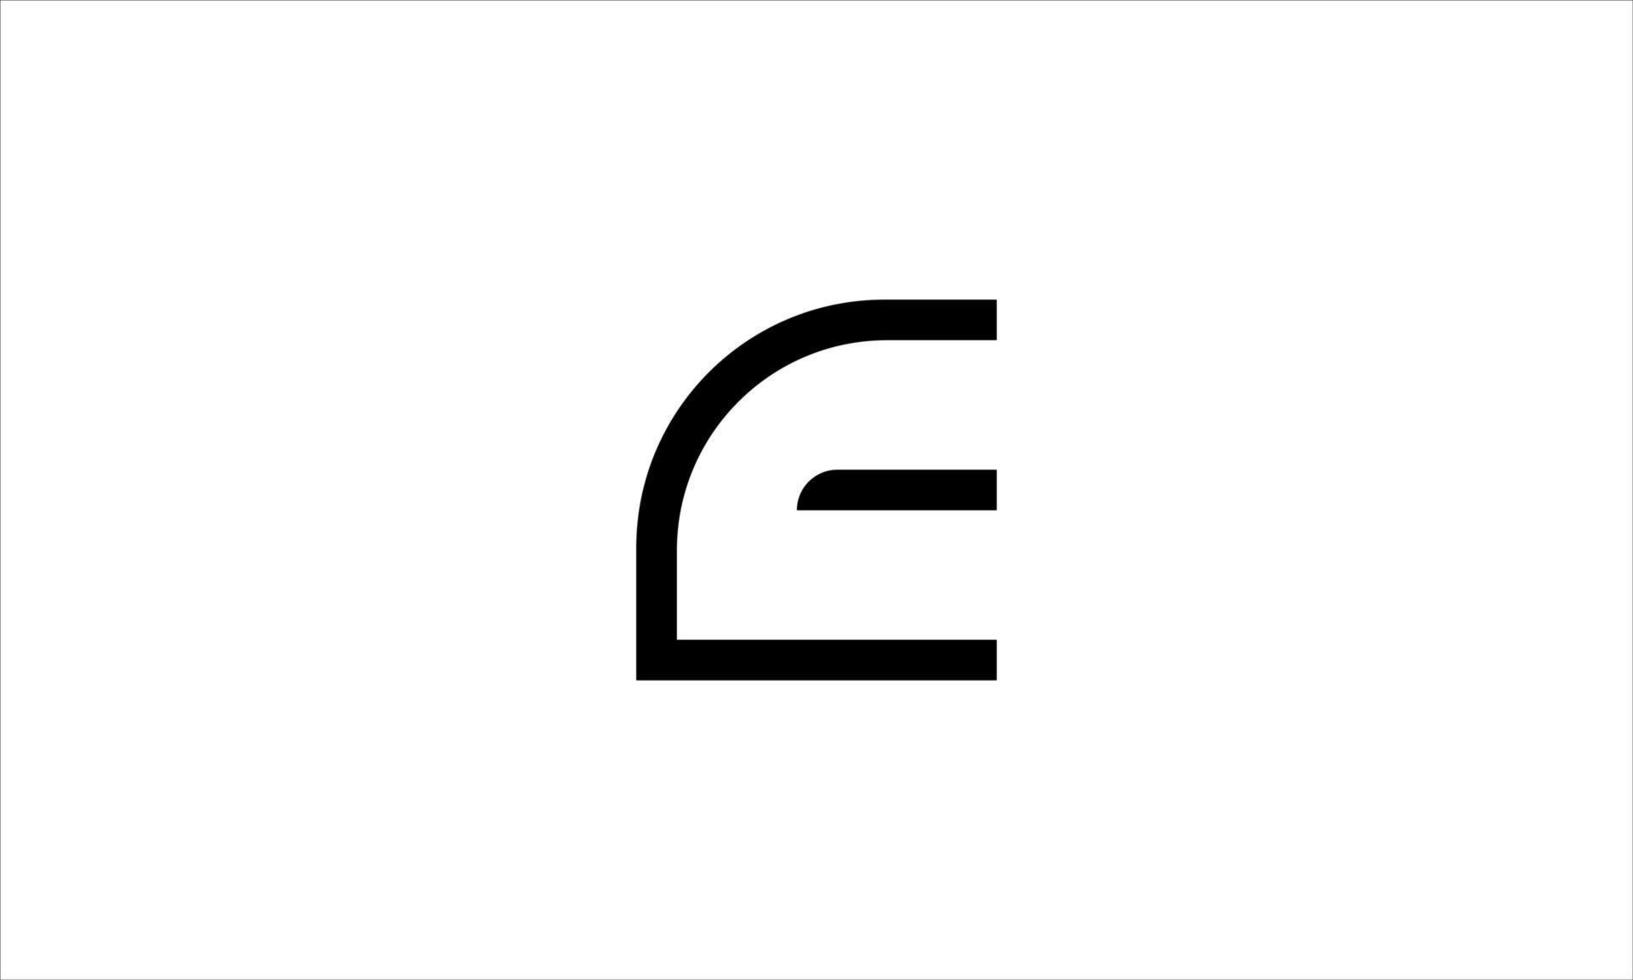 E letter logo. E. E logo icon design vector illustration.